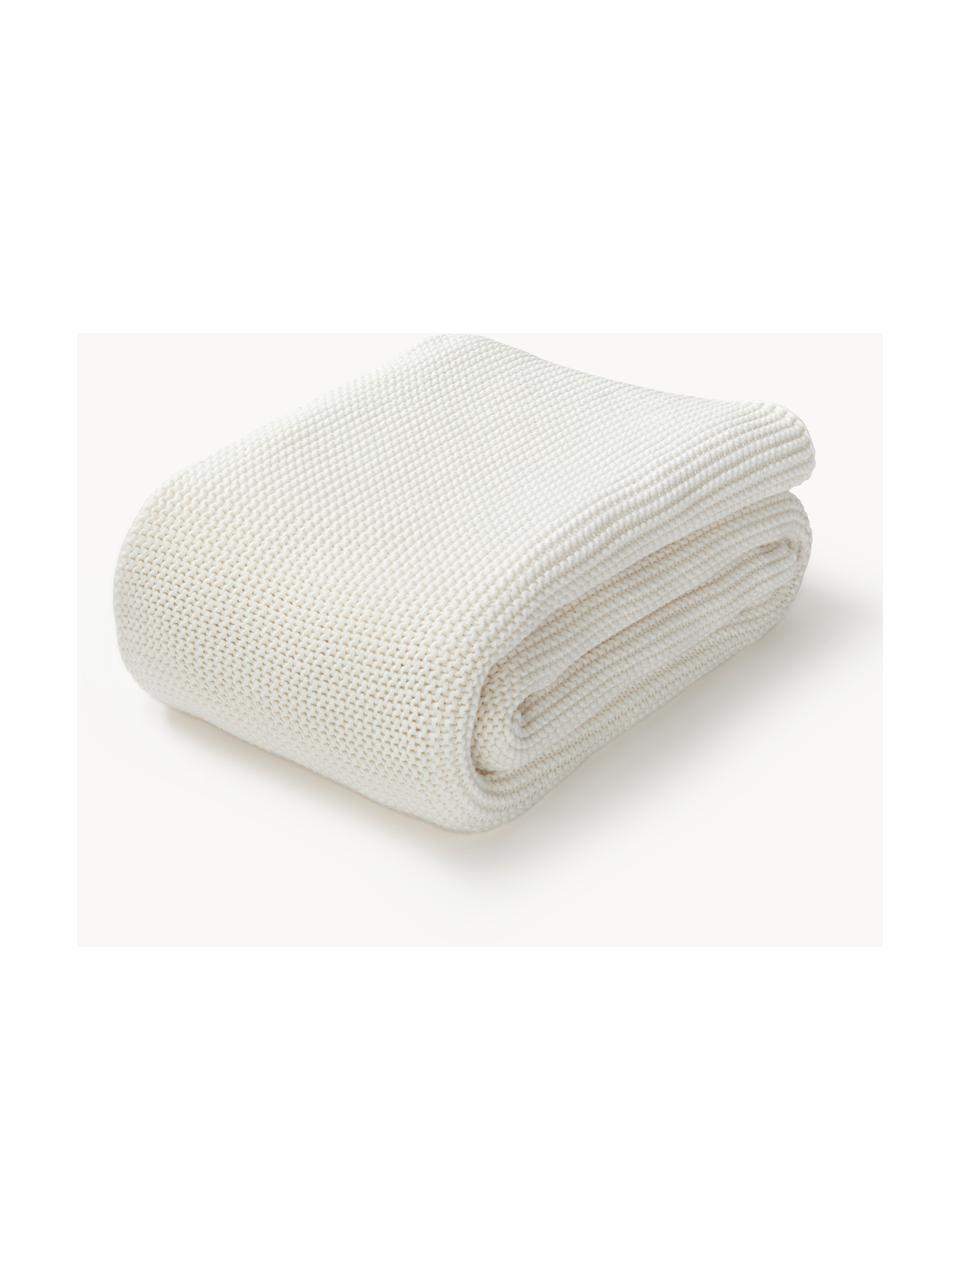 Coperta a maglia in cotone organico Adalyn, 100% cotone organico certificato GOTS, Bianco latte, Larg. 150 x Lung. 200 cm